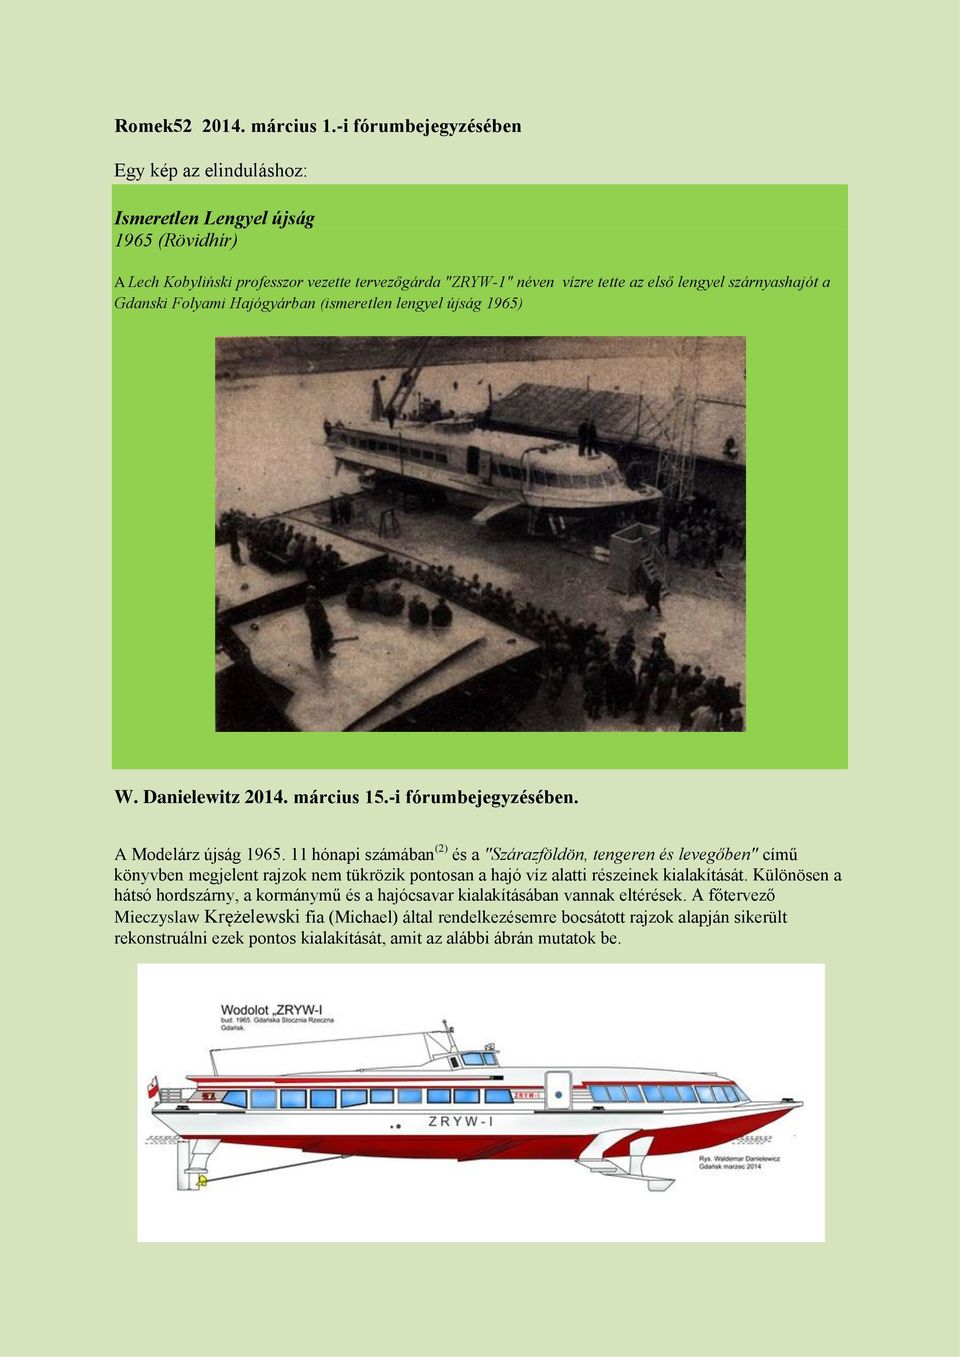 Gdanski Folyami Hajógyárban (ismeretlen lengyel újság 1965) W. Danielewitz 2014. március 15.-i fórumbejegyzésében. A Modelárz újság 1965.